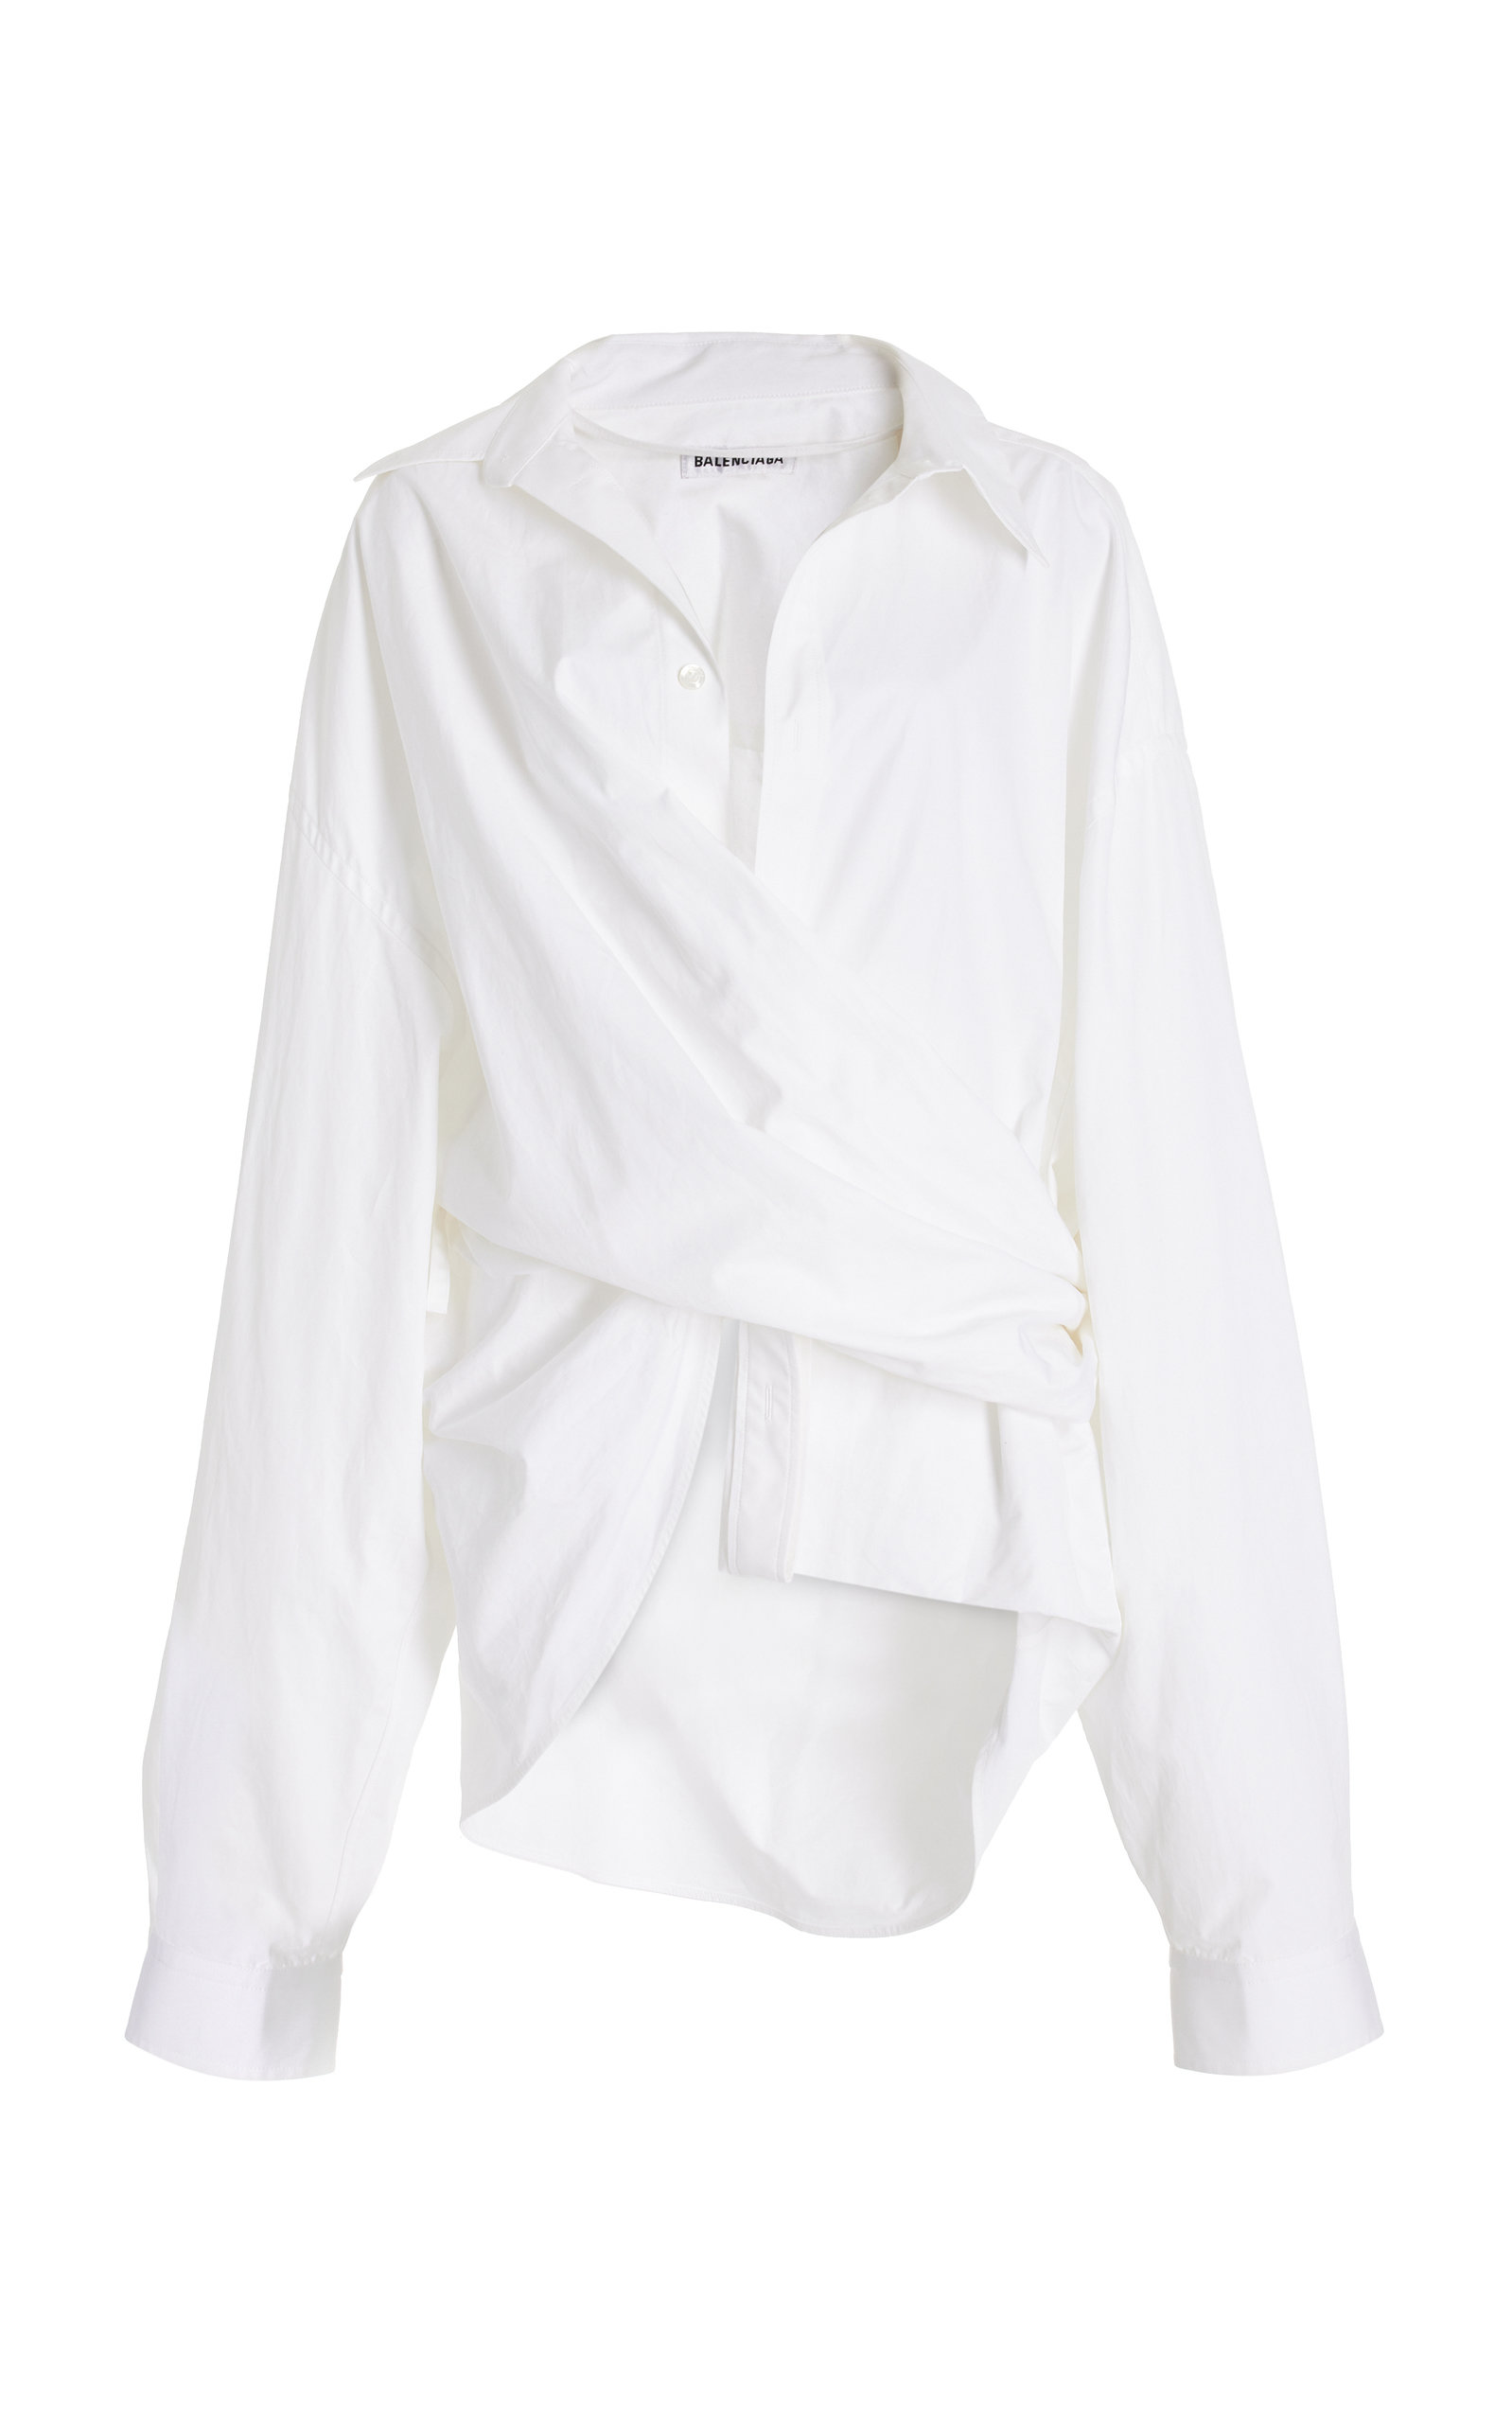 Balenciaga Women's Cotton Wrap Shirt